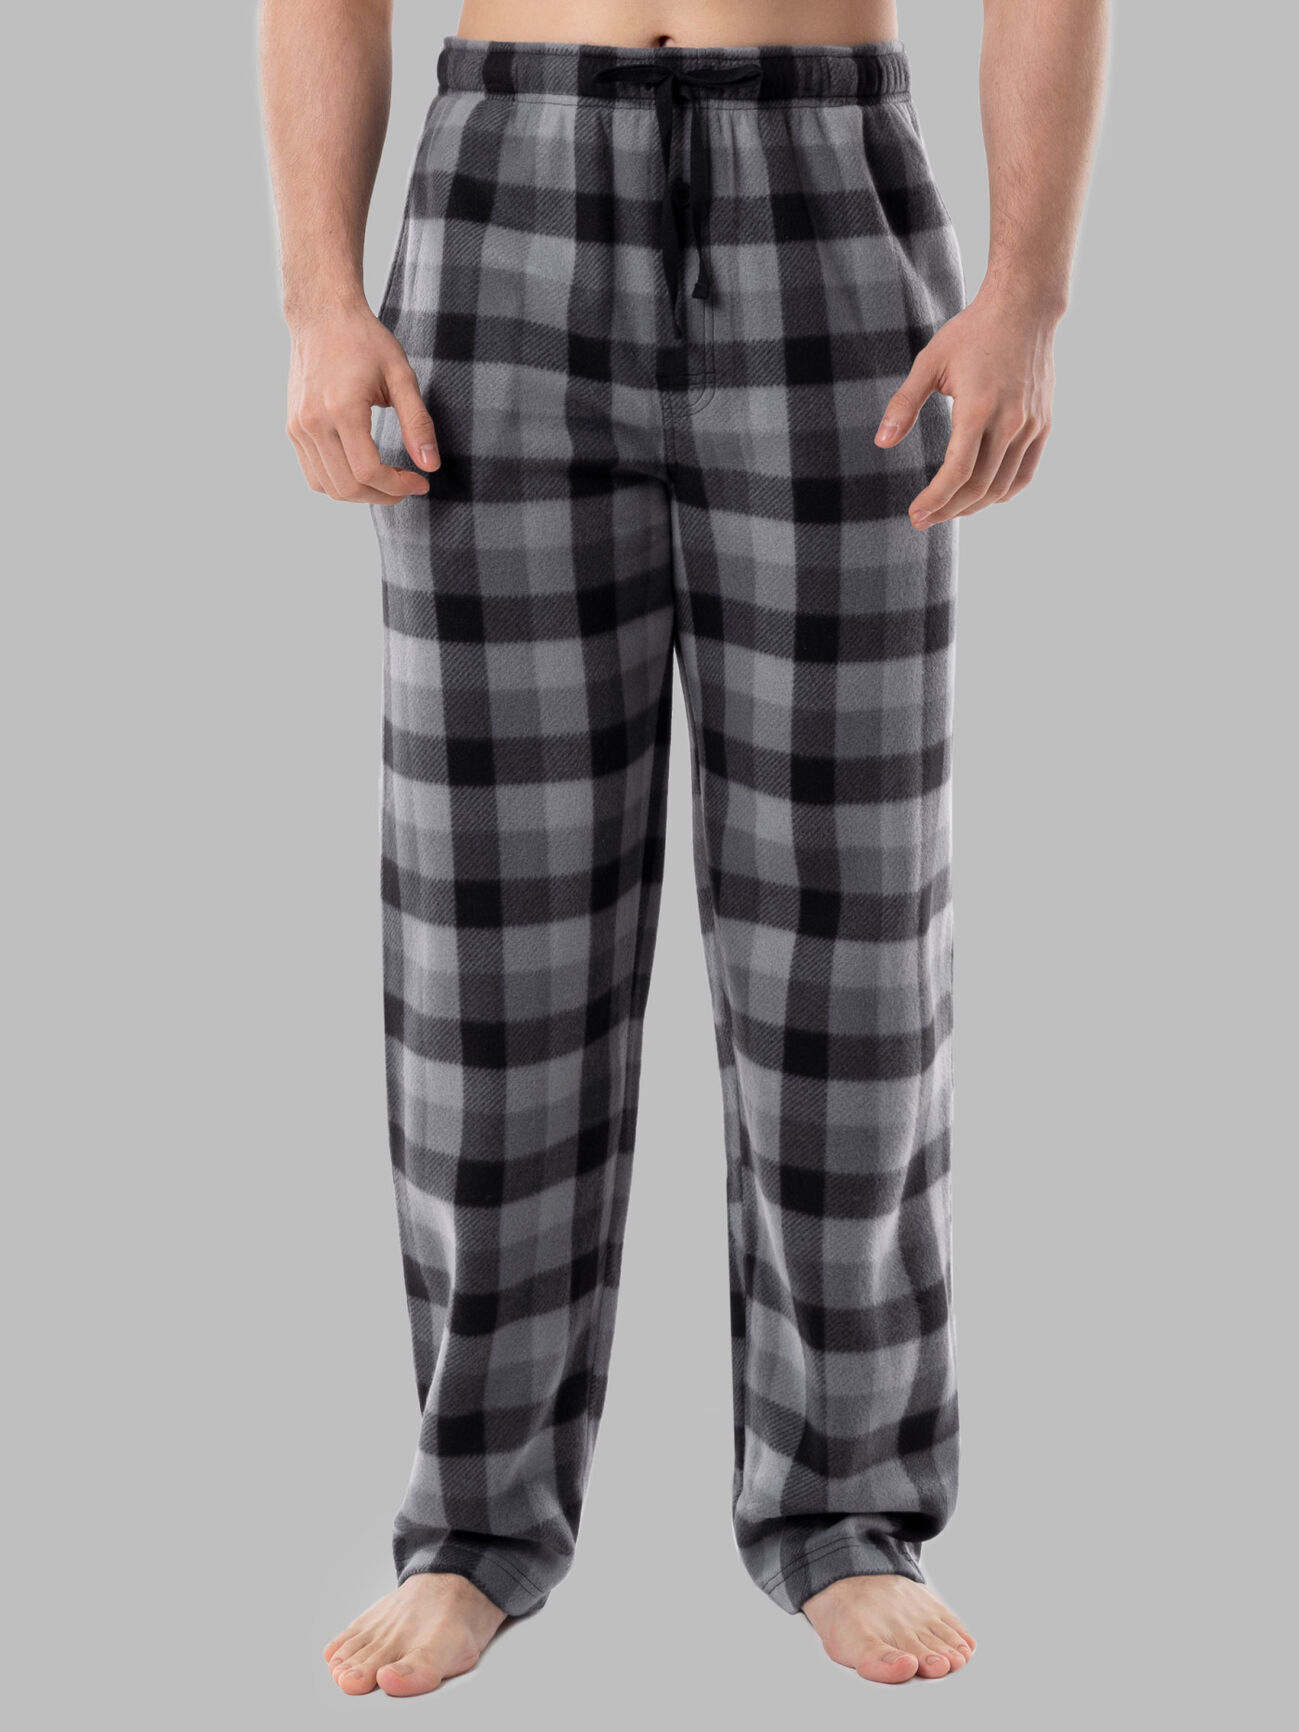 Men's Pyjama Pants - Sleep Pants for Men